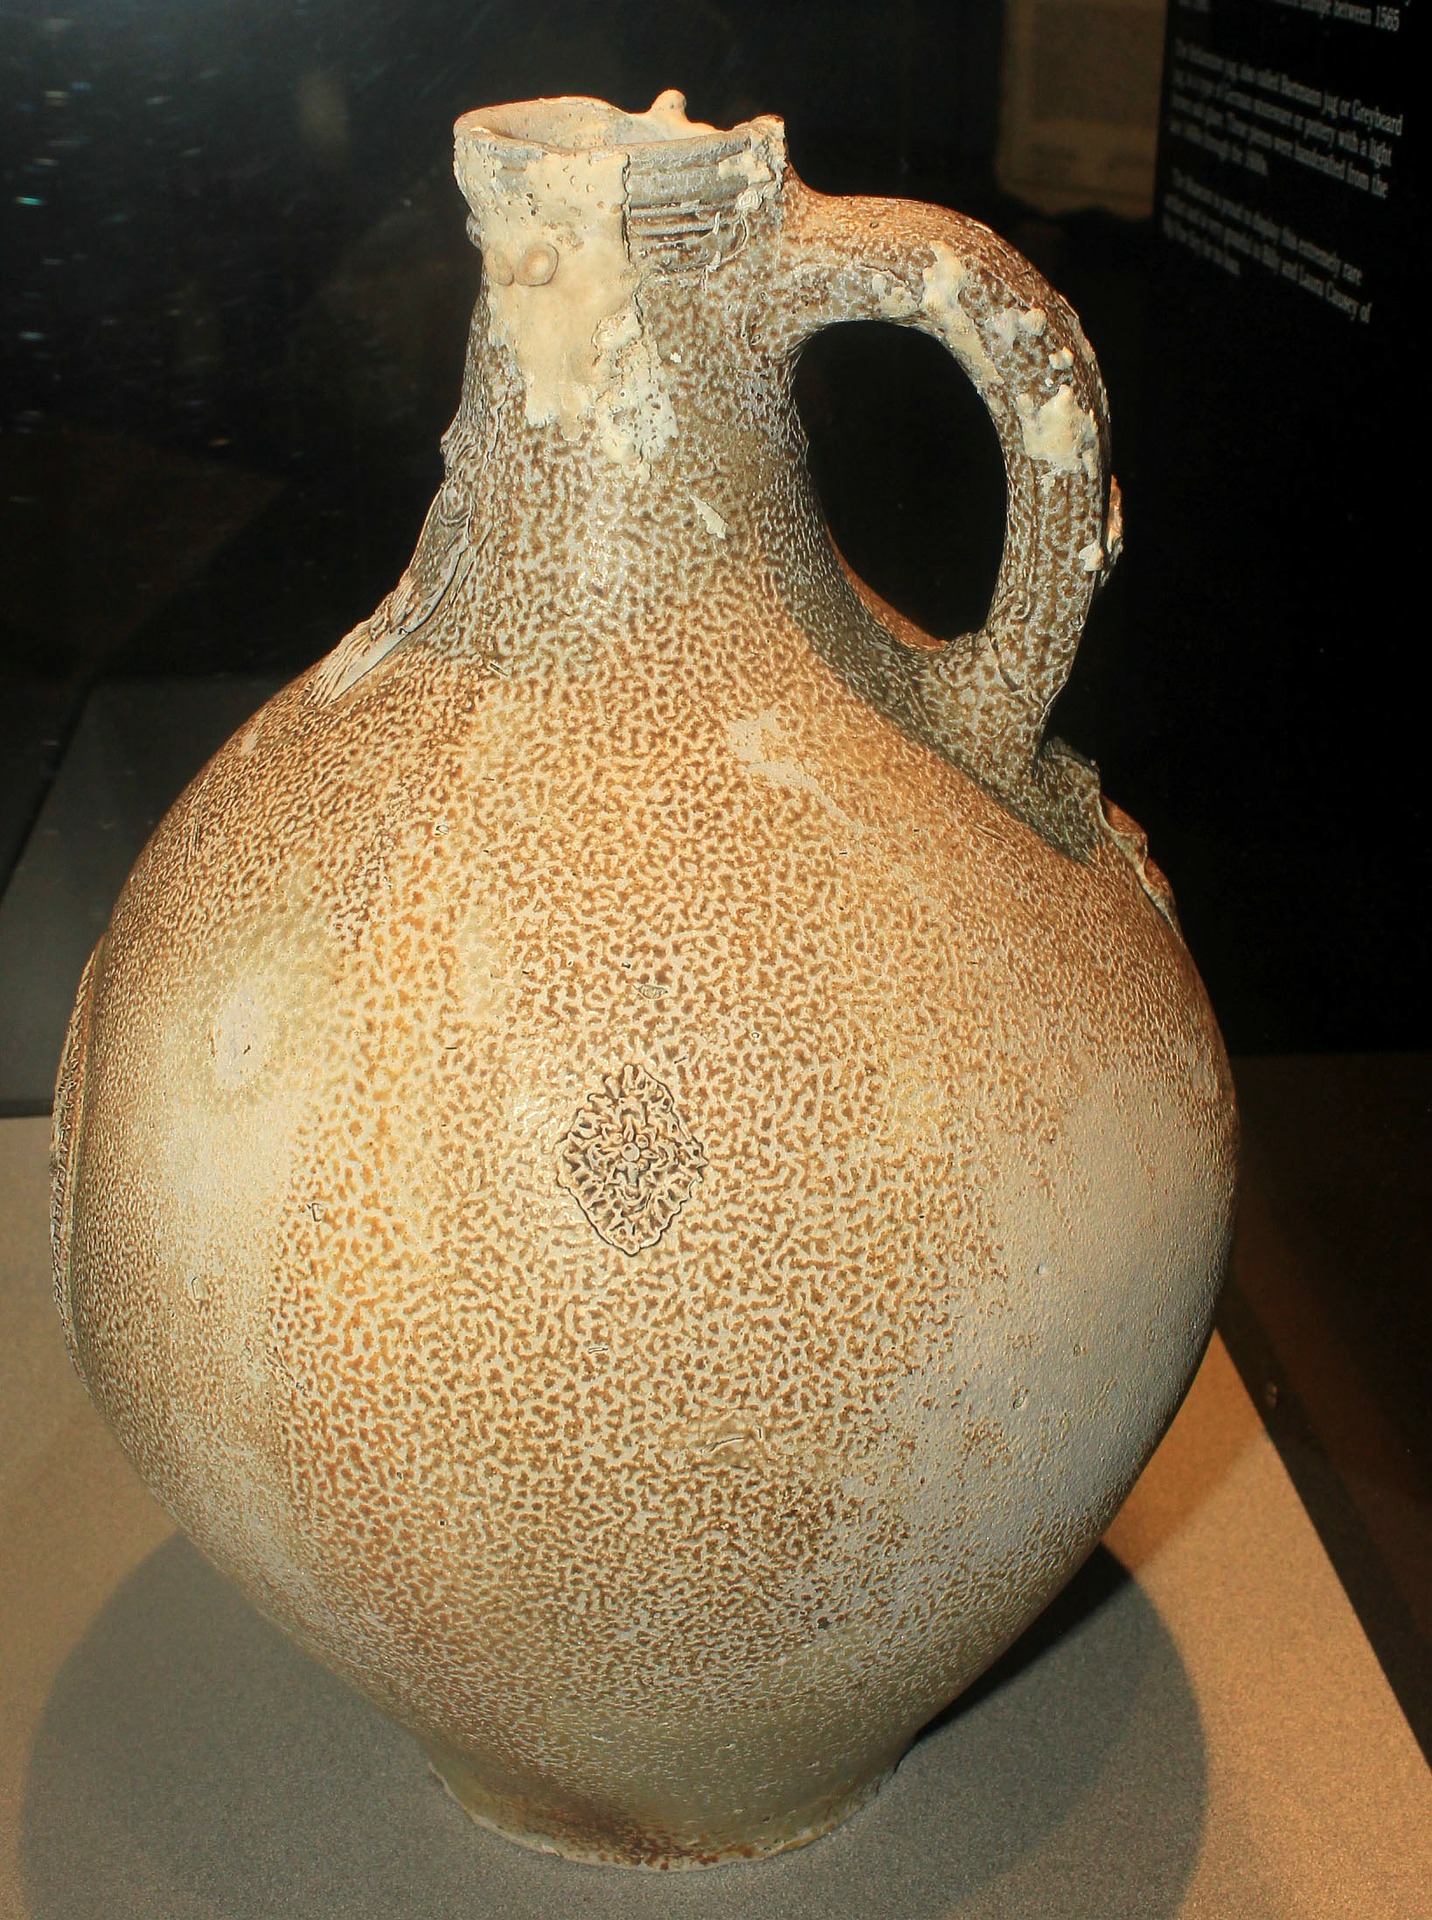 An ancient jug